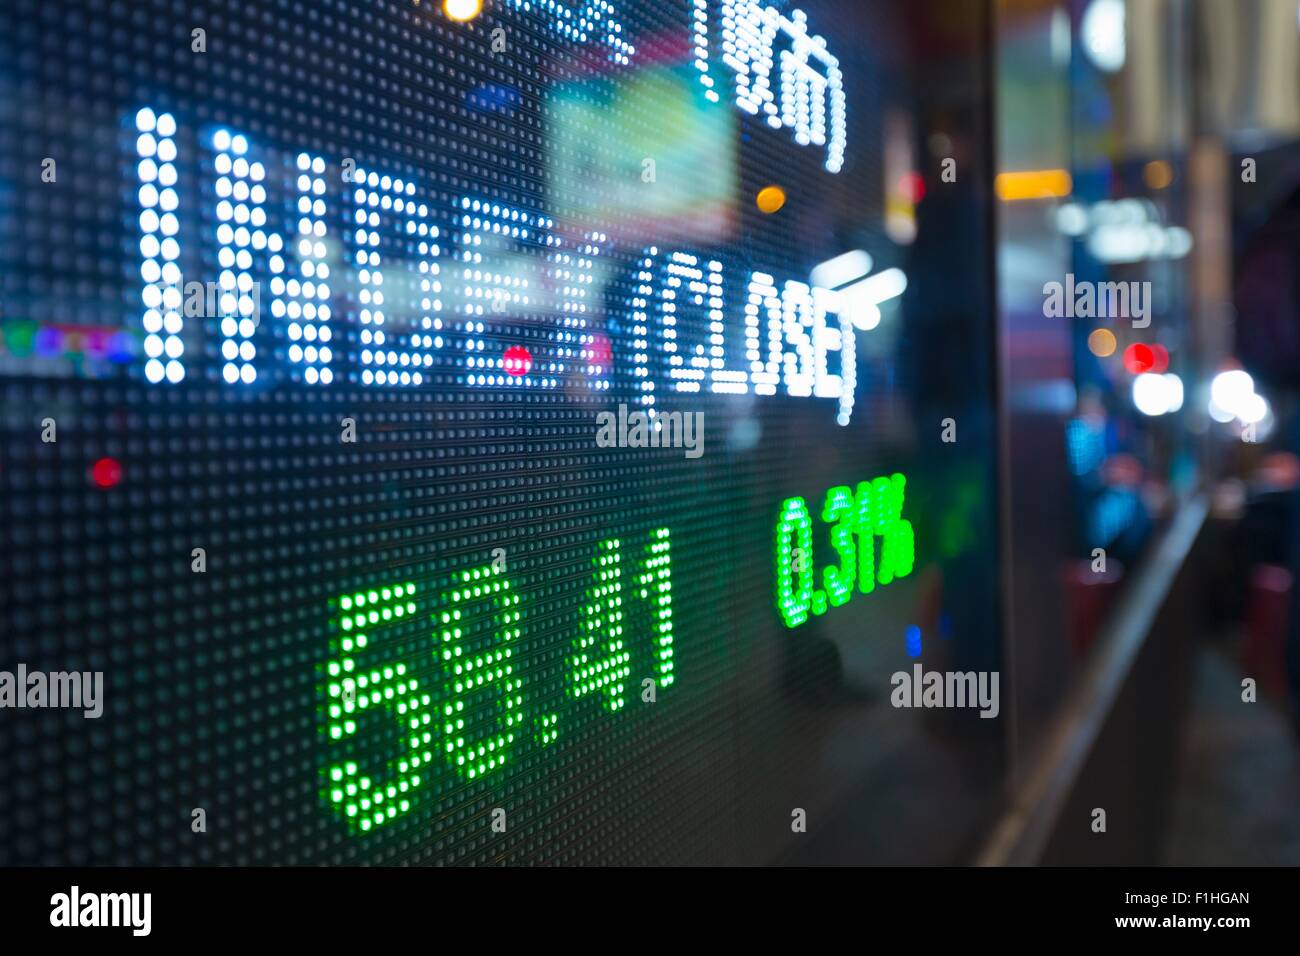 Digital display for stock market changes, Hong Kong, China Stock Photo